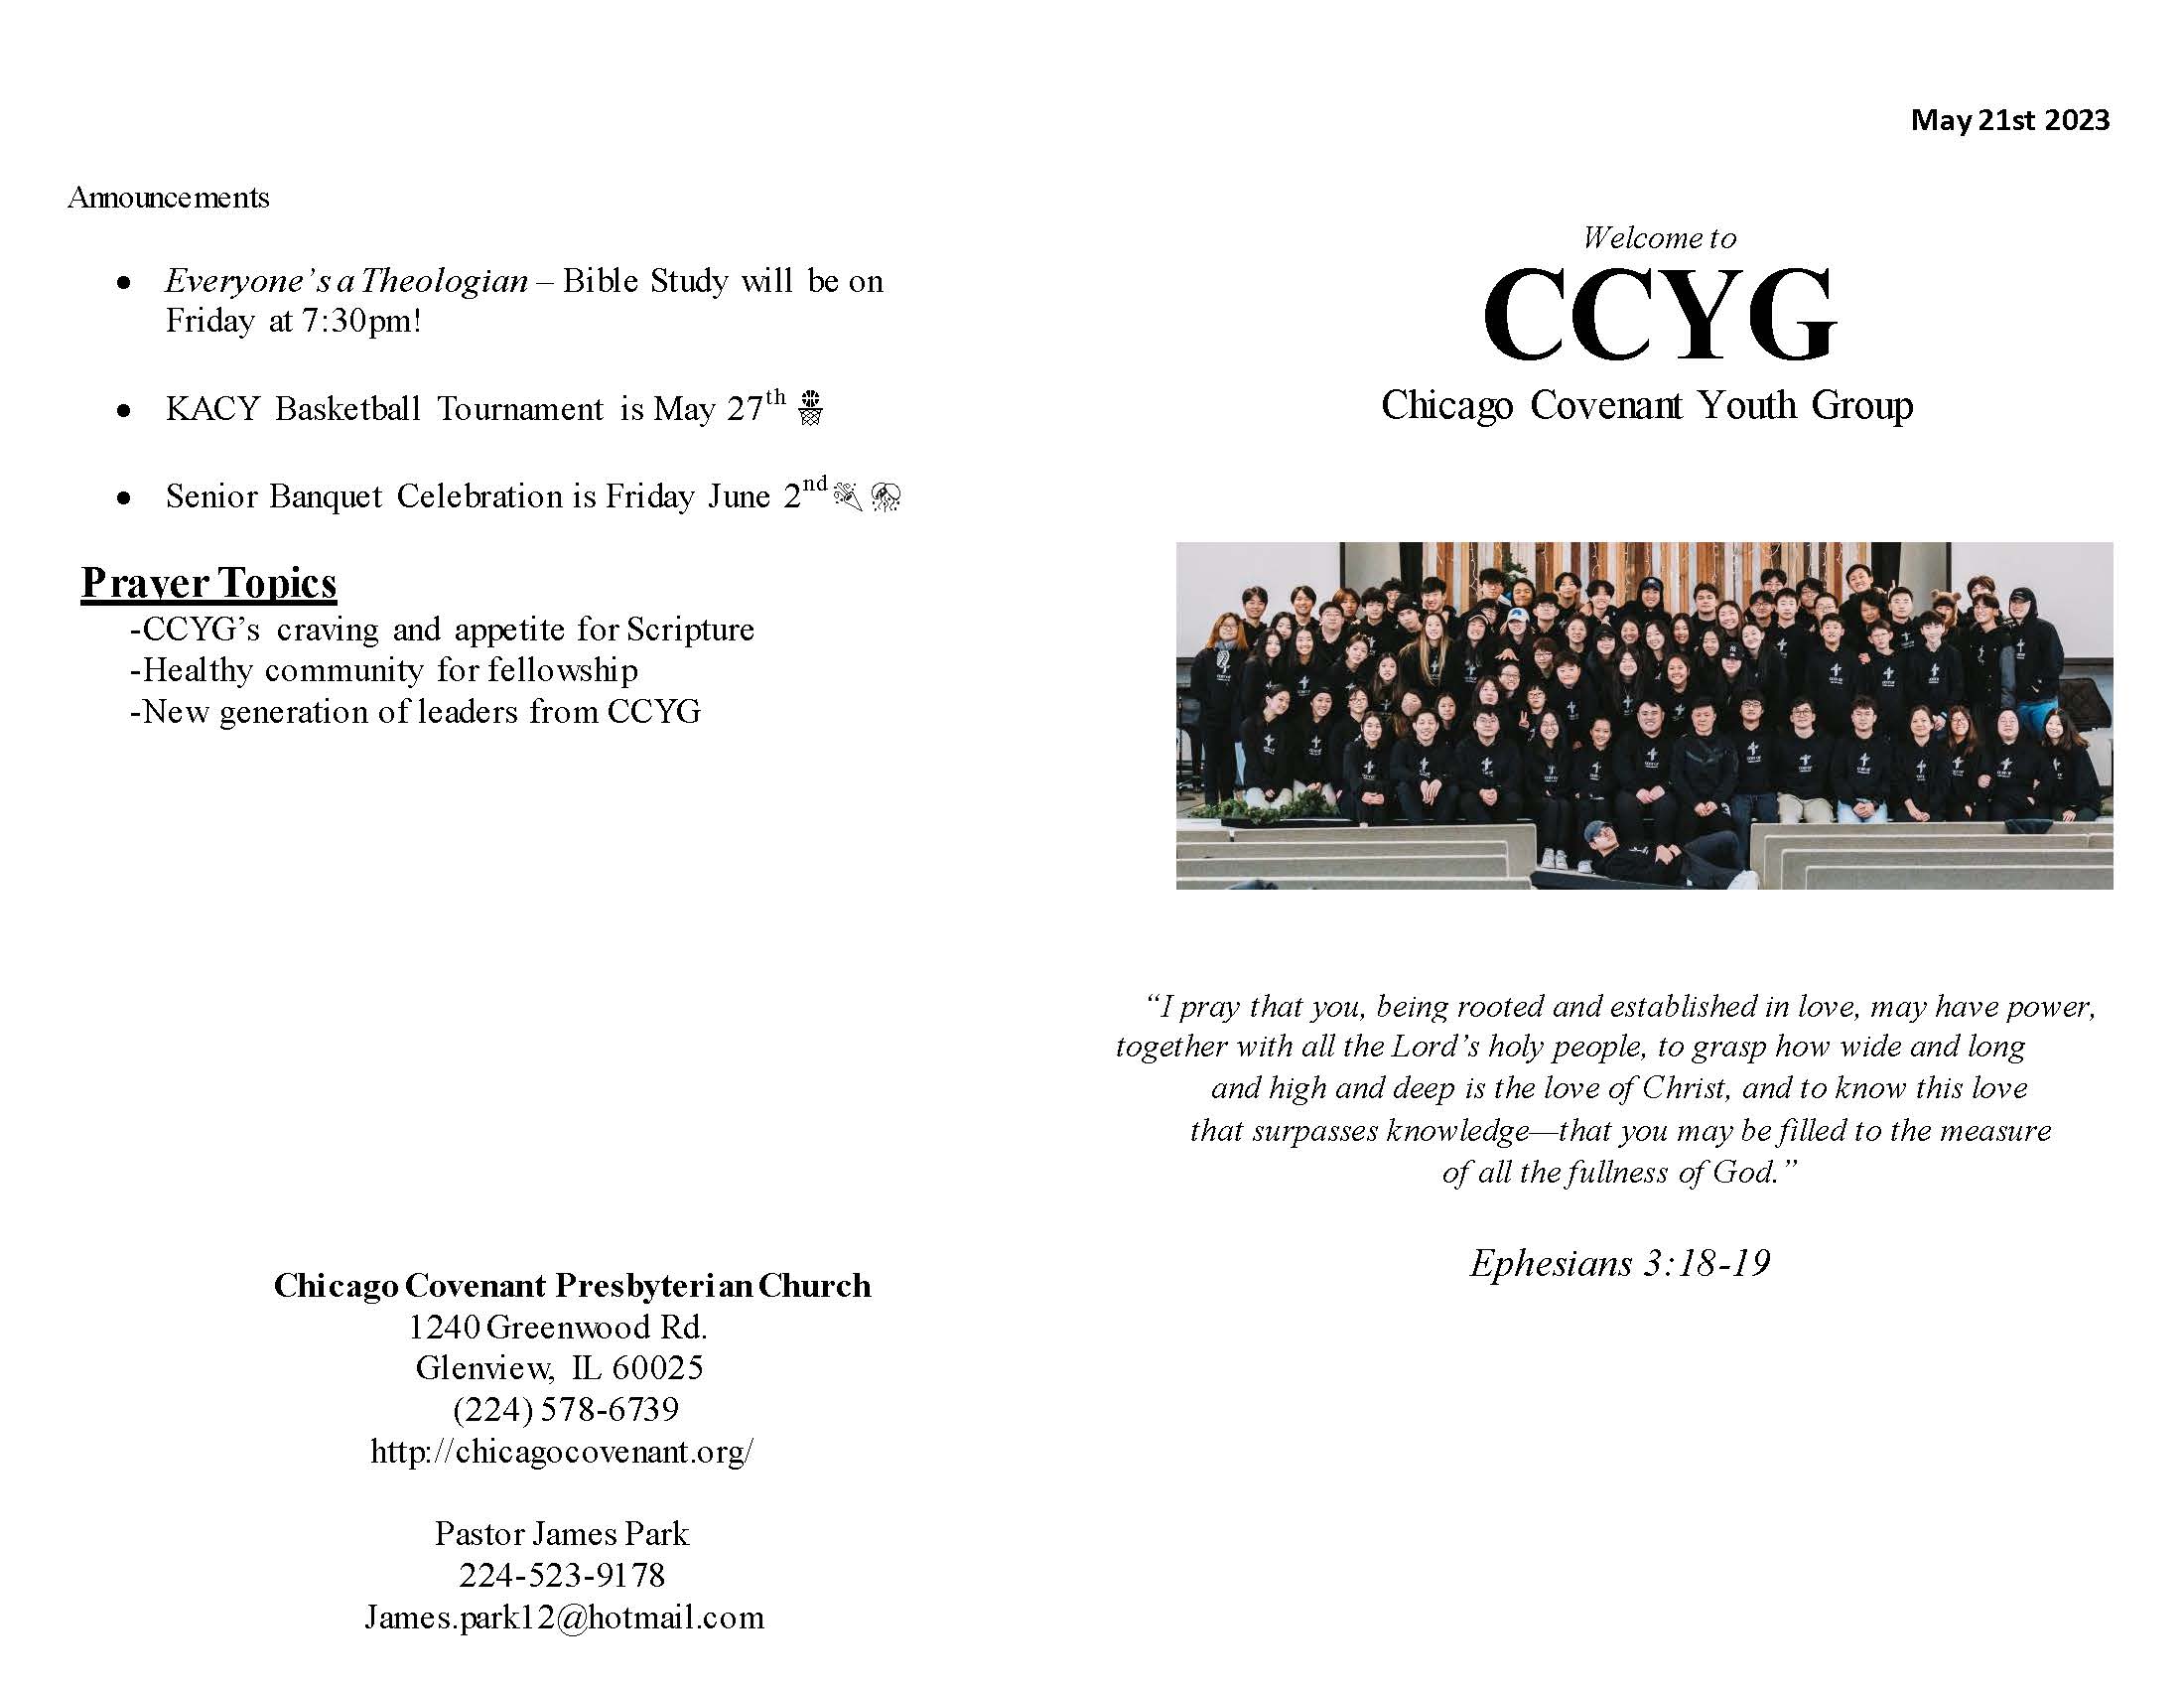 CCYG Bulletin 05212023_Page_1.jpg